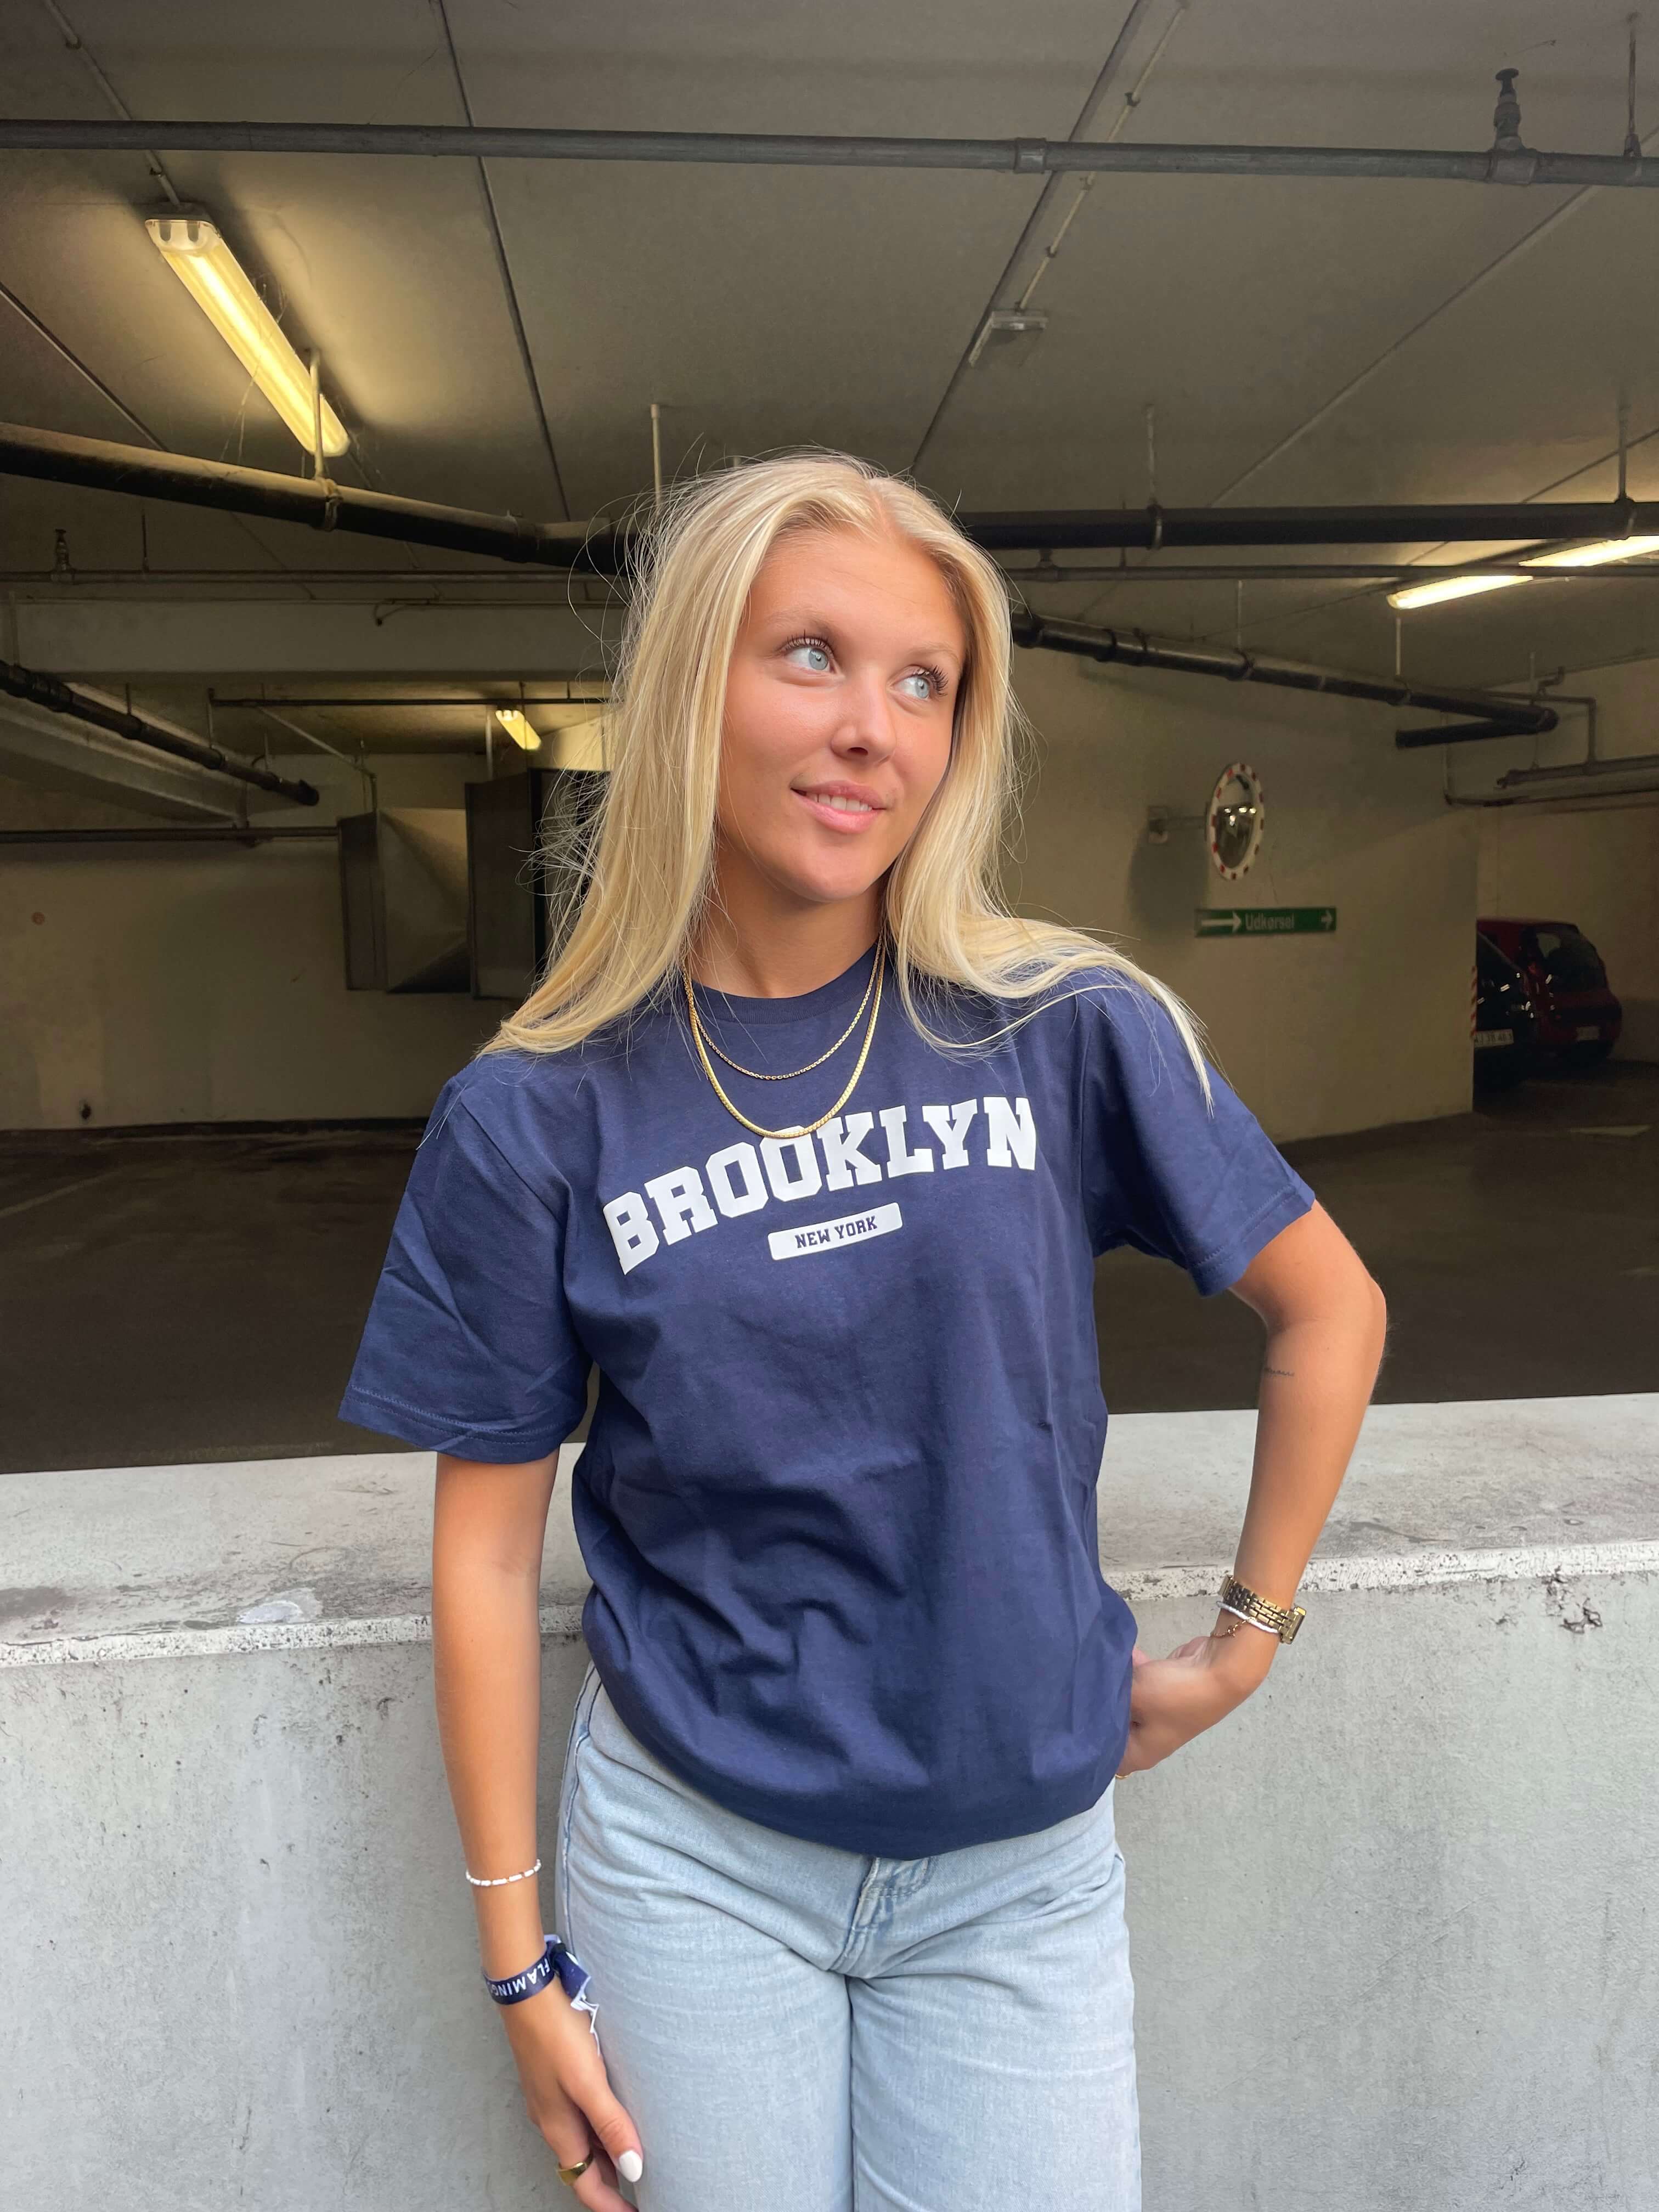 Brooklyn - Navy T-Shirt